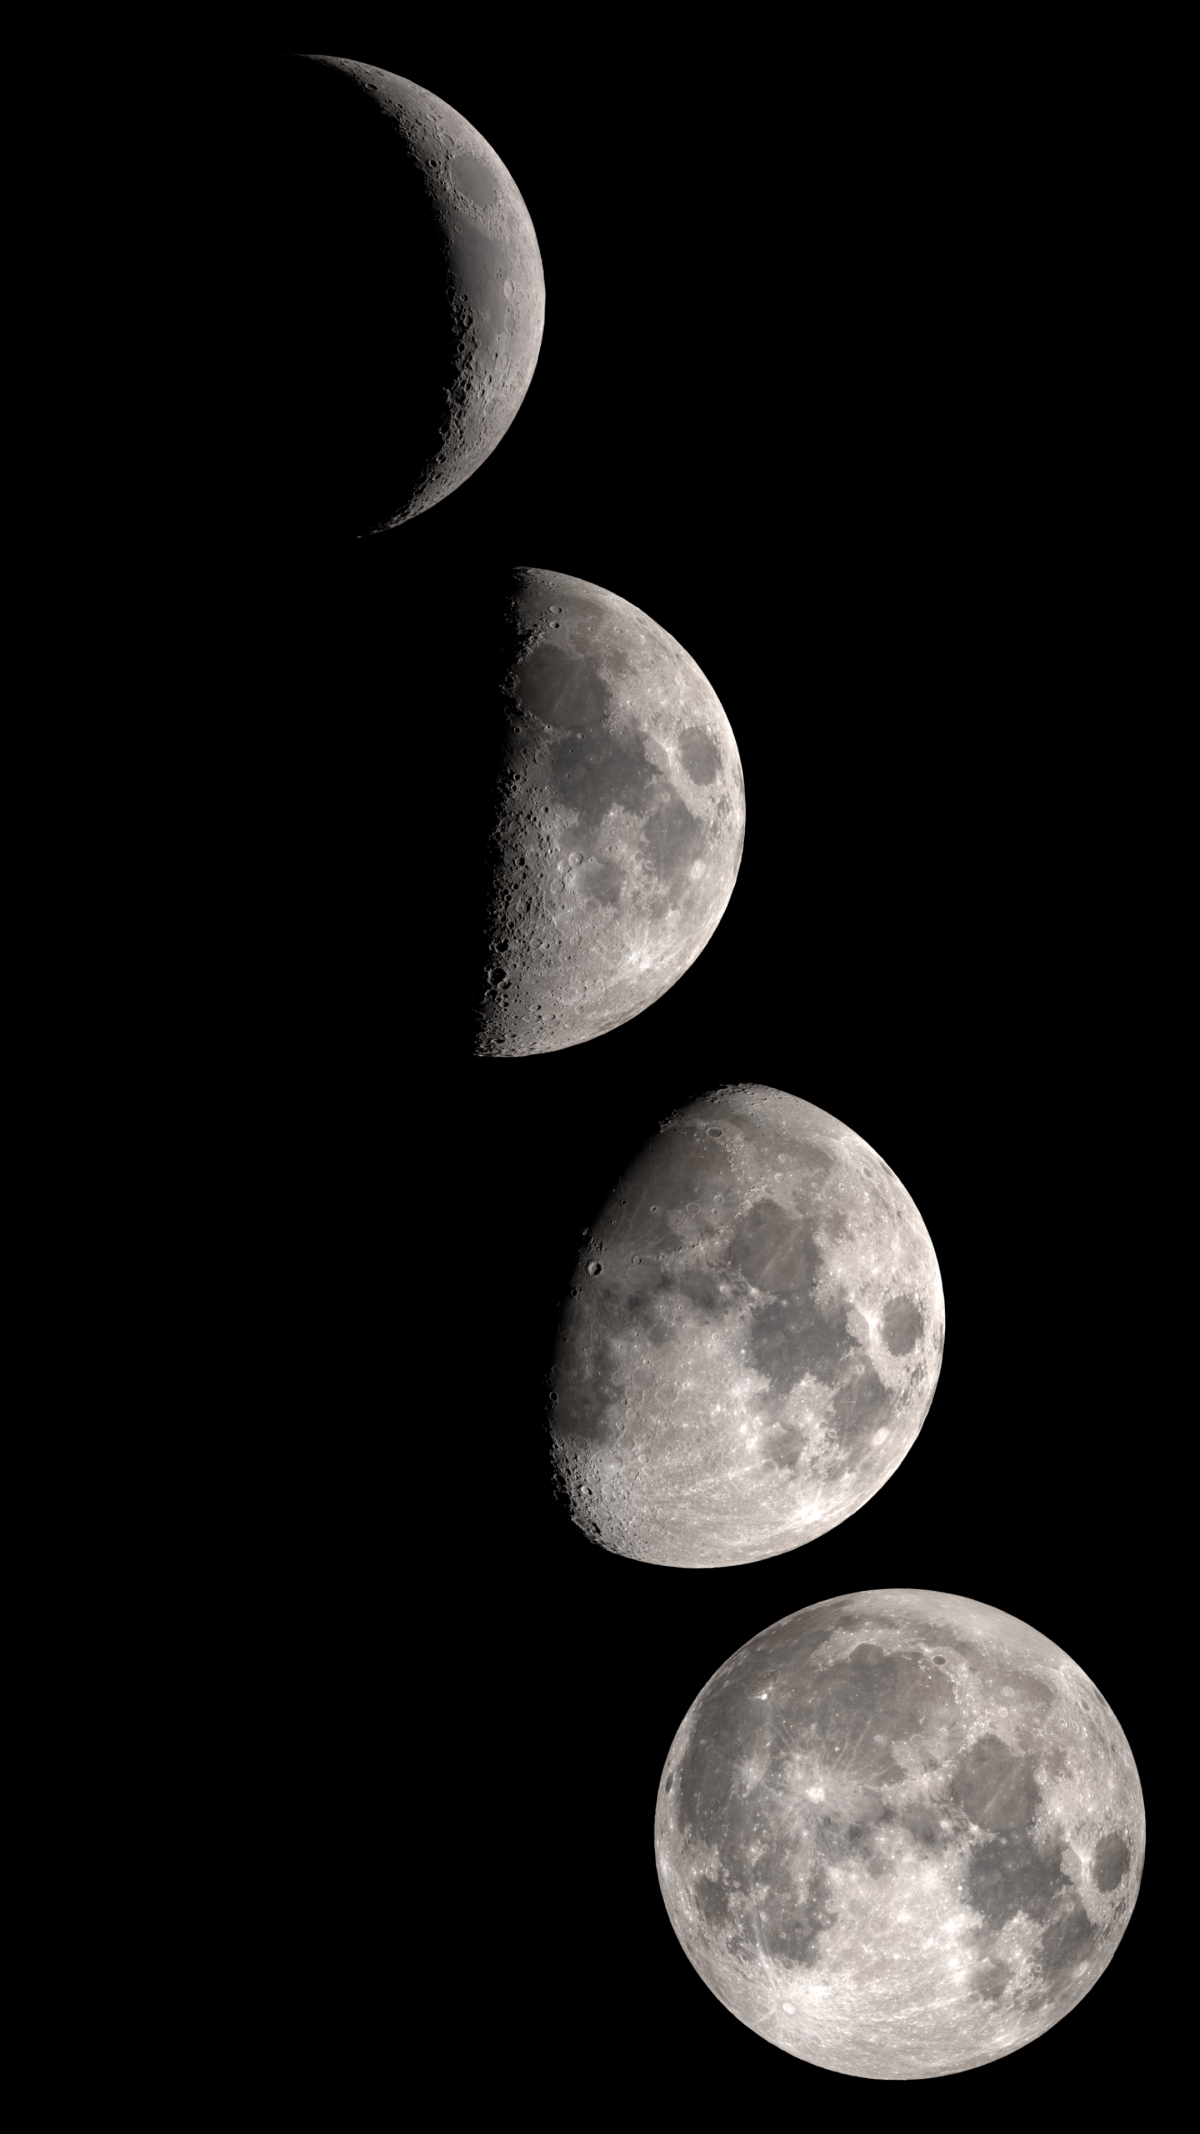 Обои на телефон Луна - 70 фото